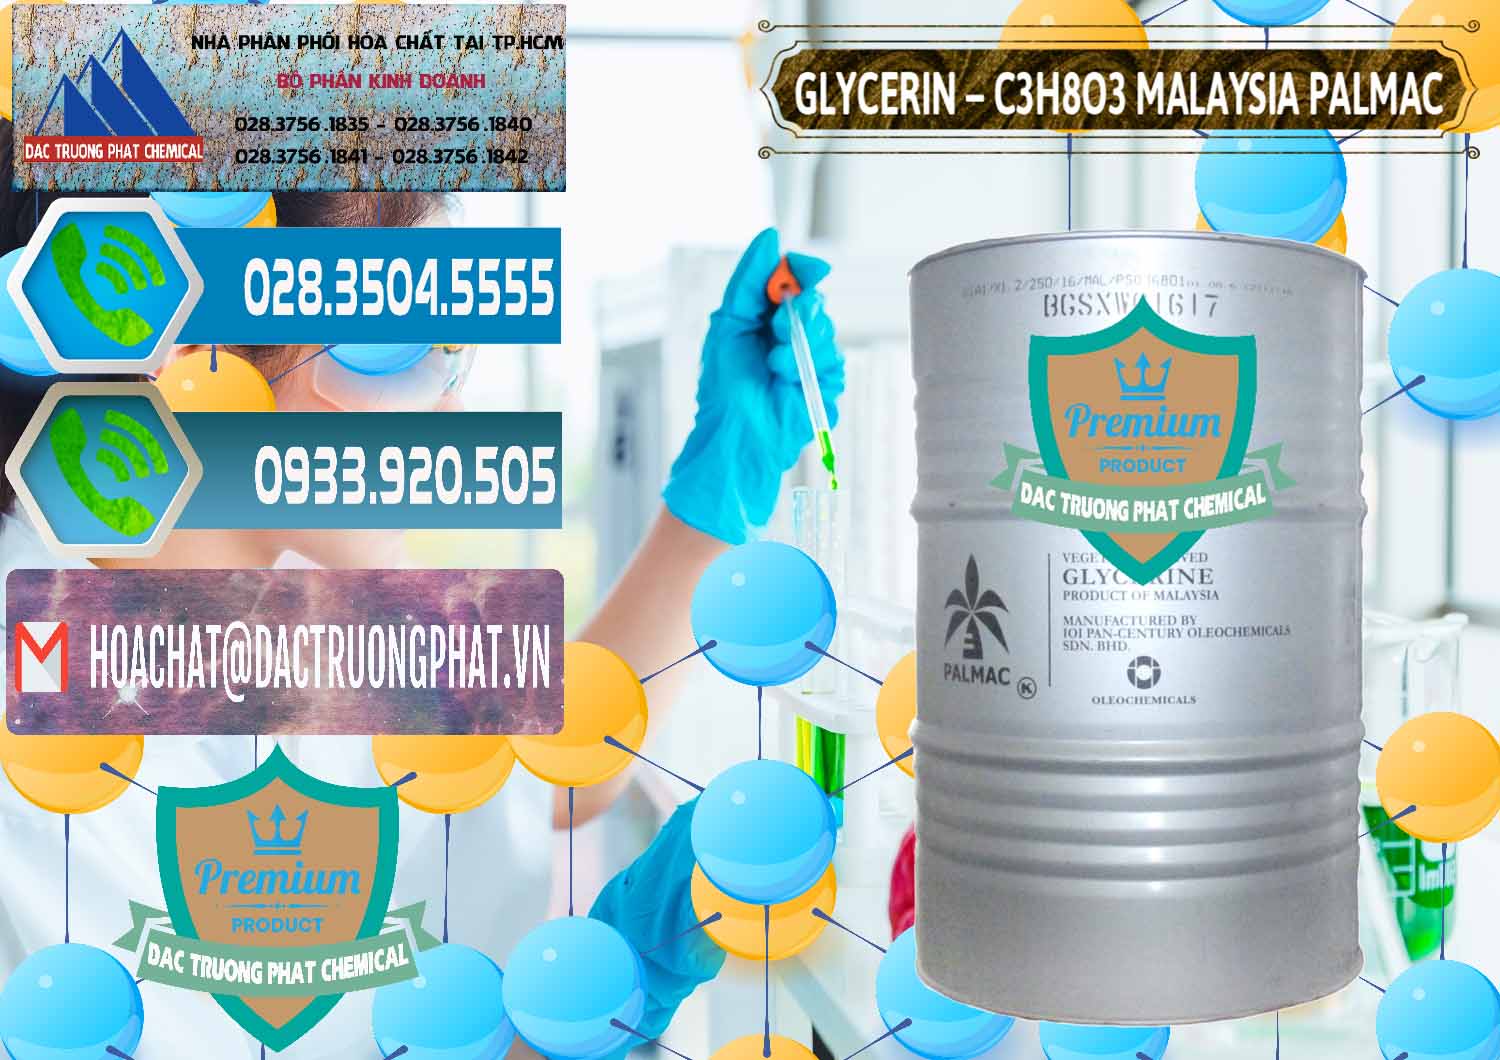 Cty chuyên cung cấp & bán Glycerin – C3H8O3 99.7% Malaysia Palmac - 0067 - Chuyên kinh doanh & phân phối hóa chất tại TP.HCM - congtyhoachat.net